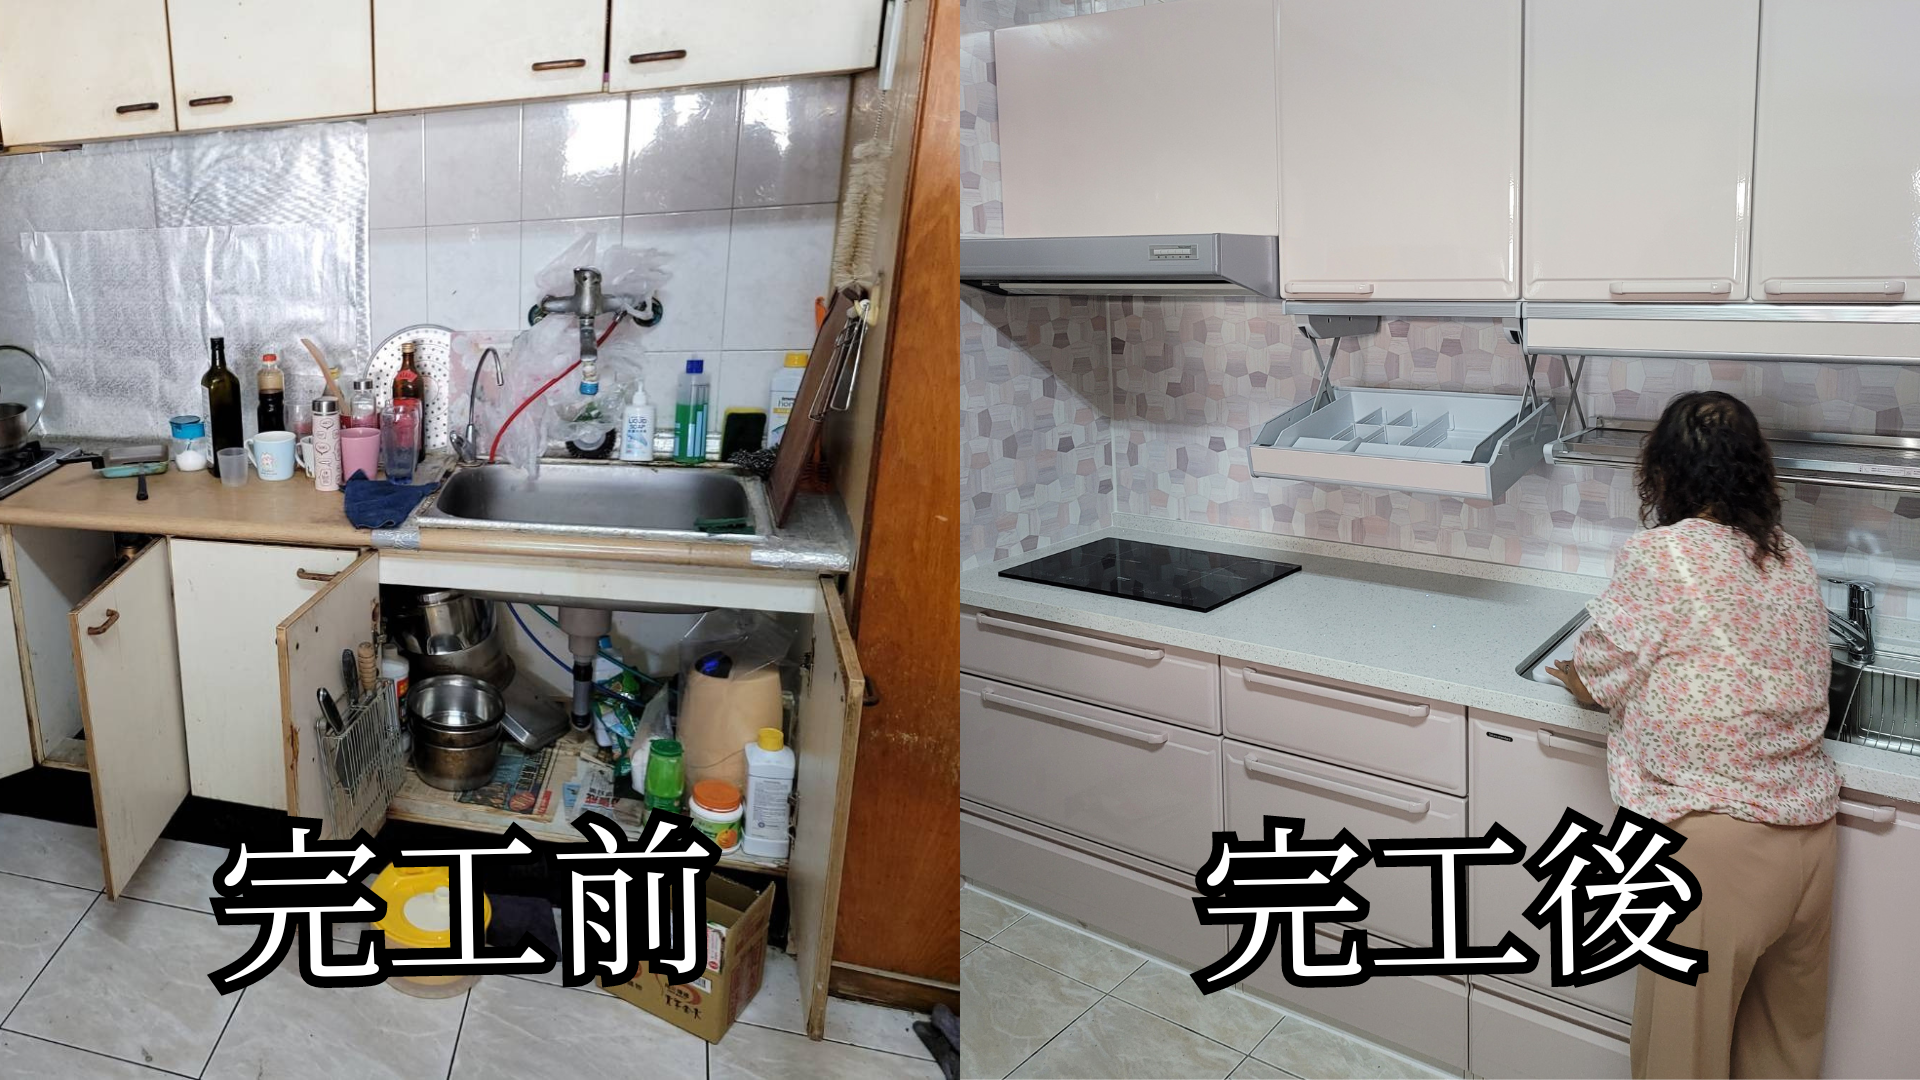 TakaraStandard系統廚具安裝前後對比大公開|1秒讓廚房質感升級的安裝細節